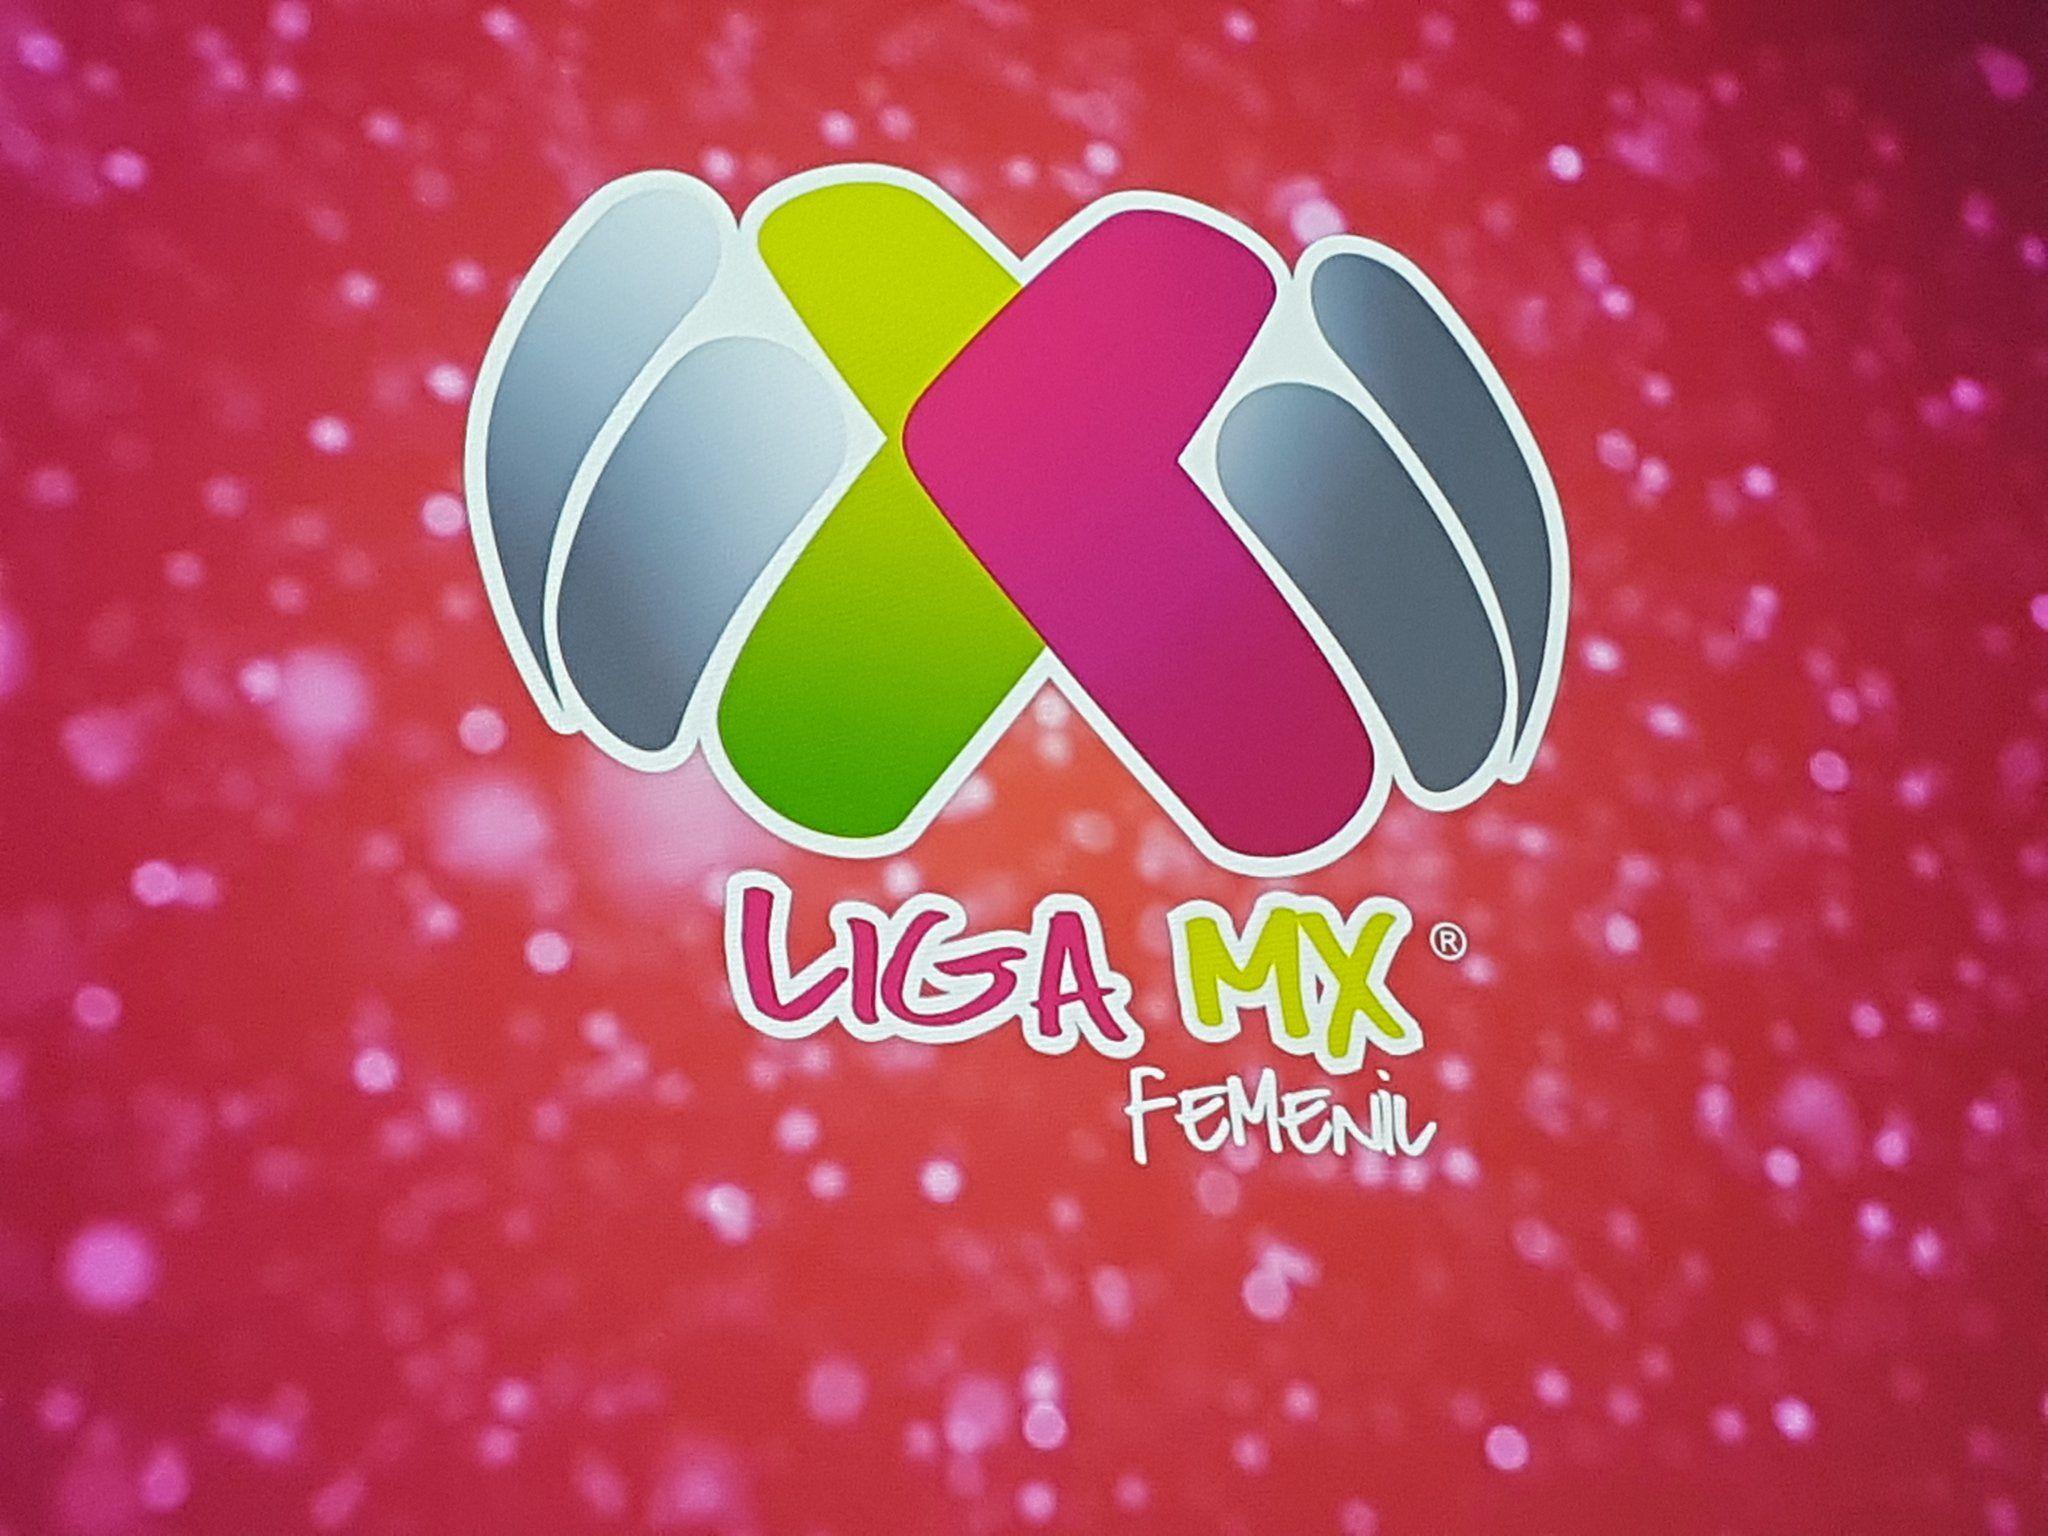 Liga MX Femenil: Quedaron definidos los grupos del primer torneo